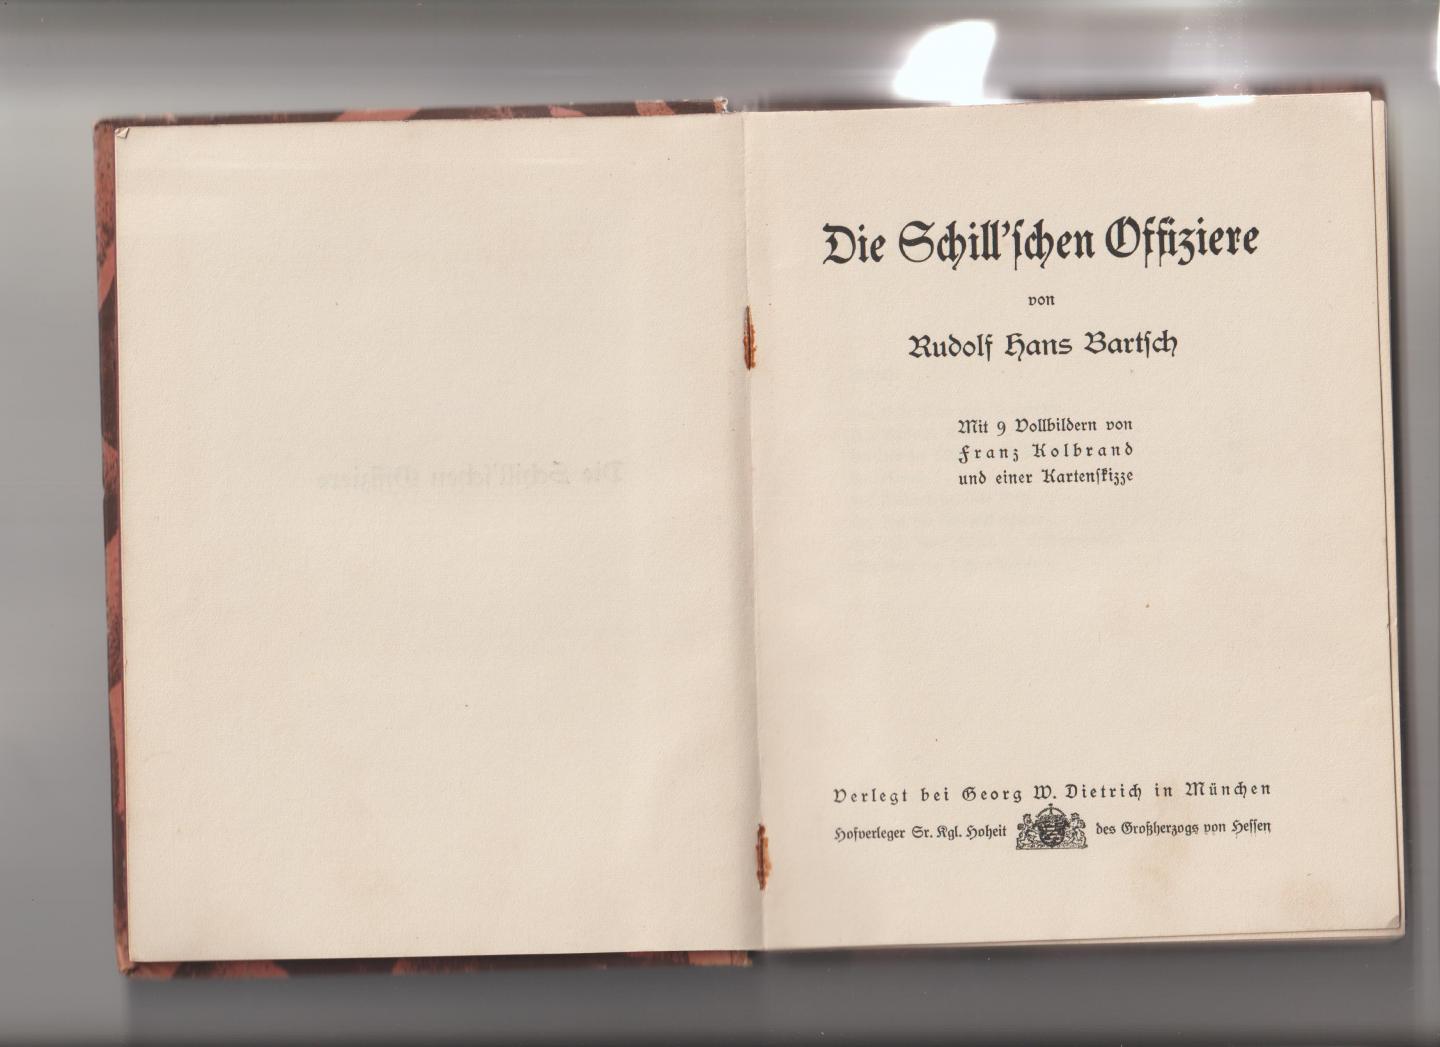 Bartsch, Rudolf Hans / Franz Kolbrand (illustraties) - Die Schill'schen Offiziere. Mit 9 Vollbildern von Franz Kolbrand und einer Kartenskizze